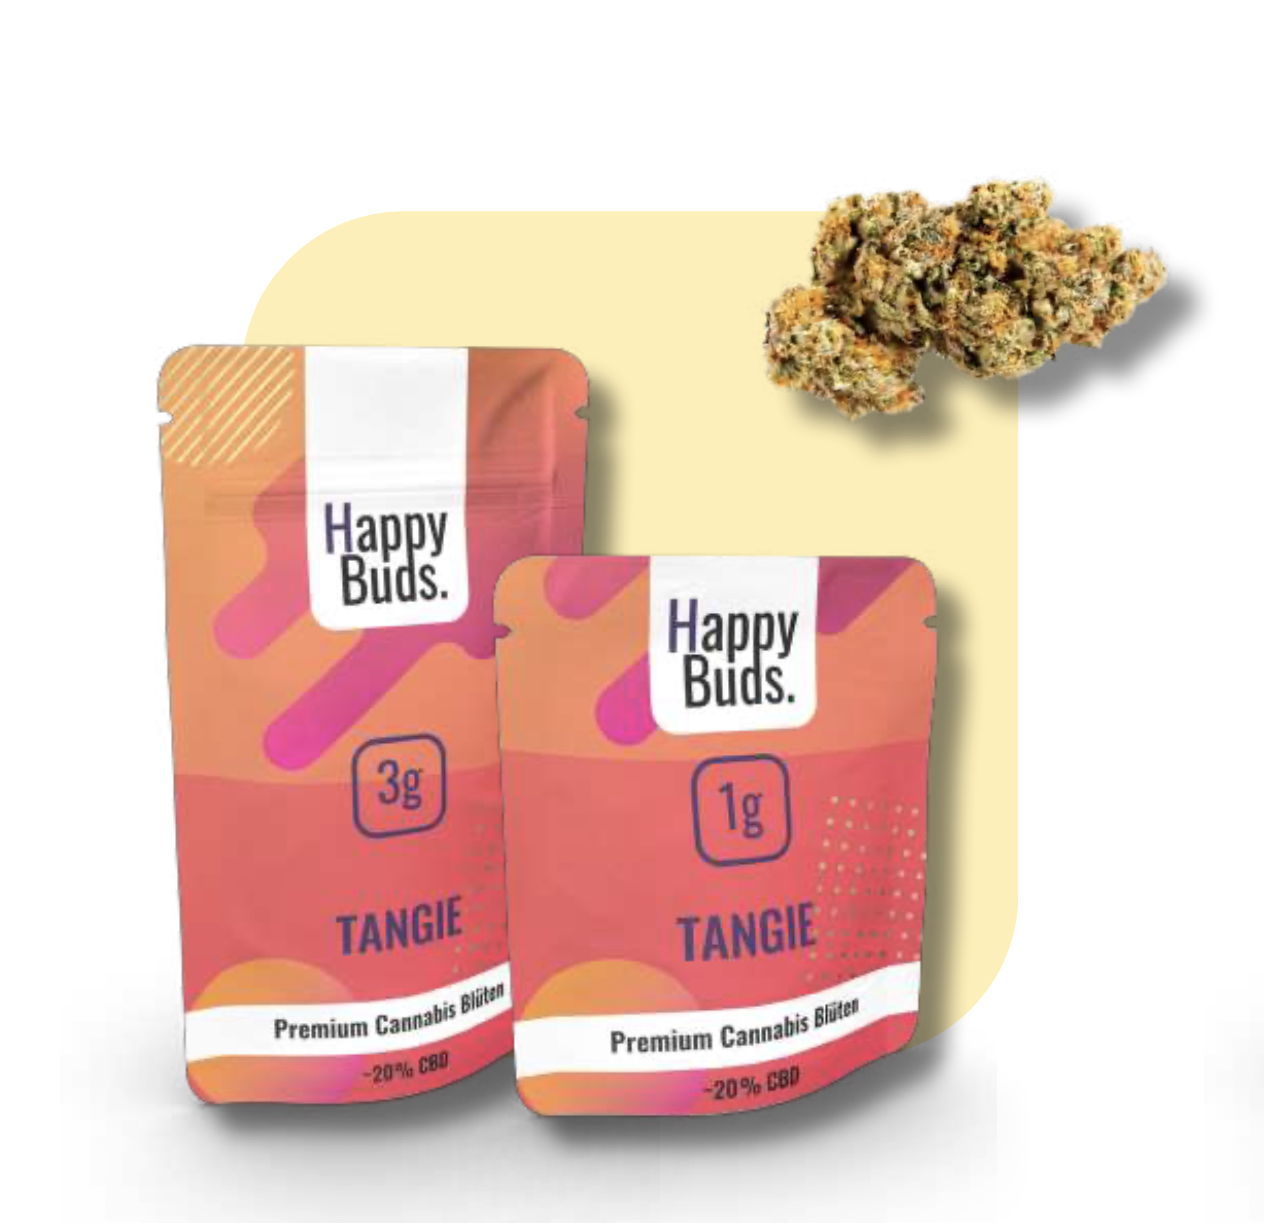 Happy Buds Tangie 3g